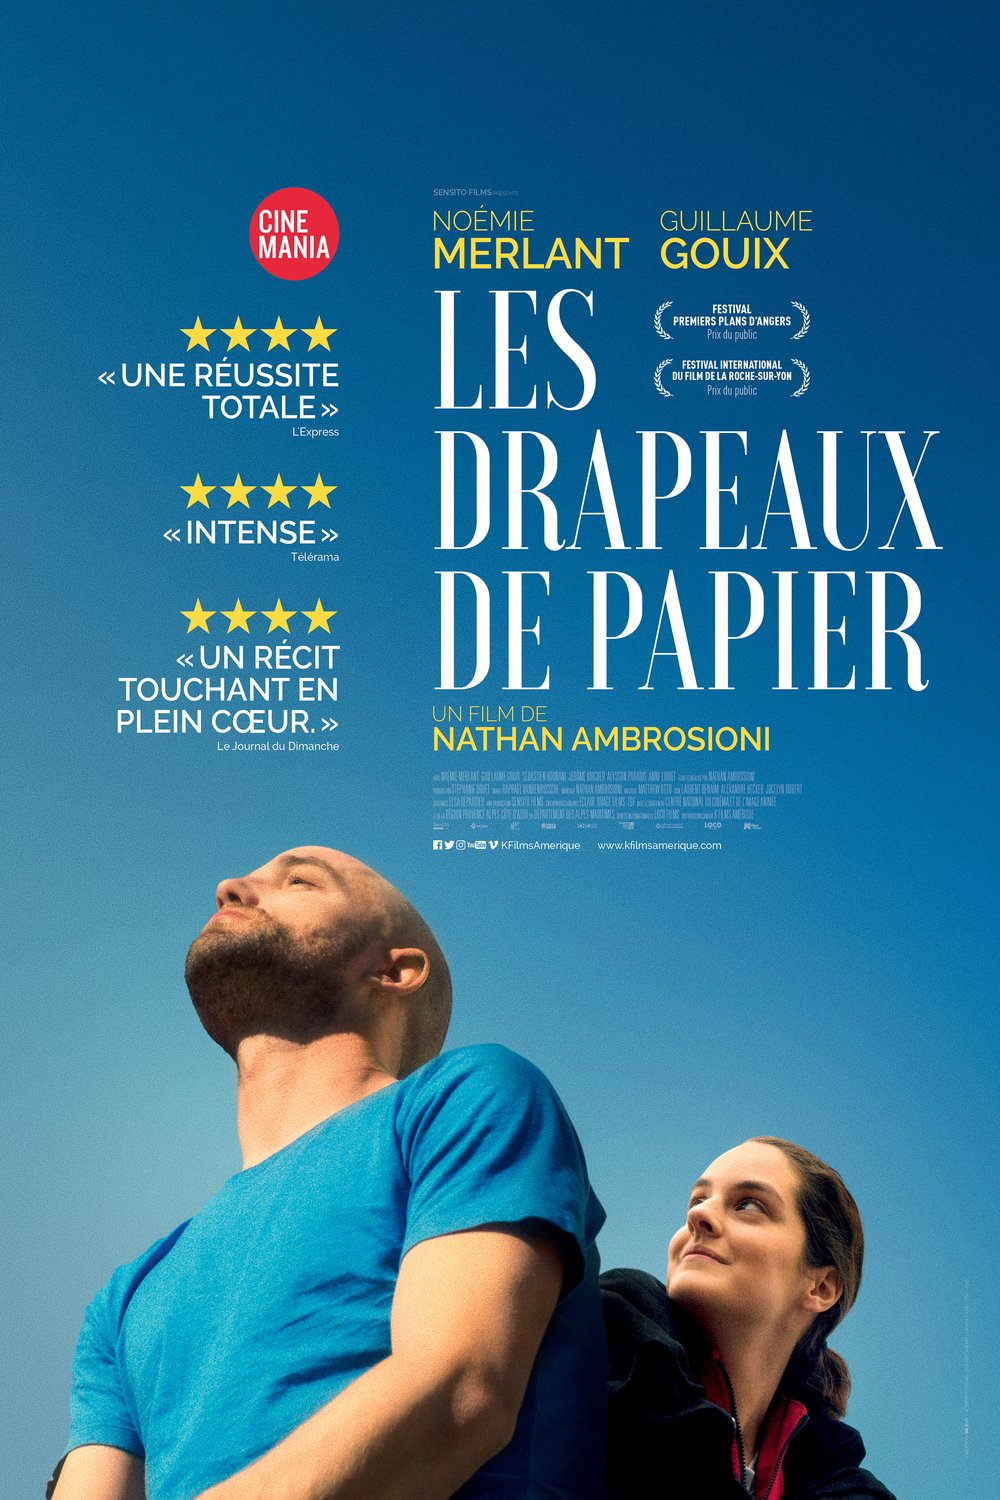 Poster of the movie Les Drapeaux de papier